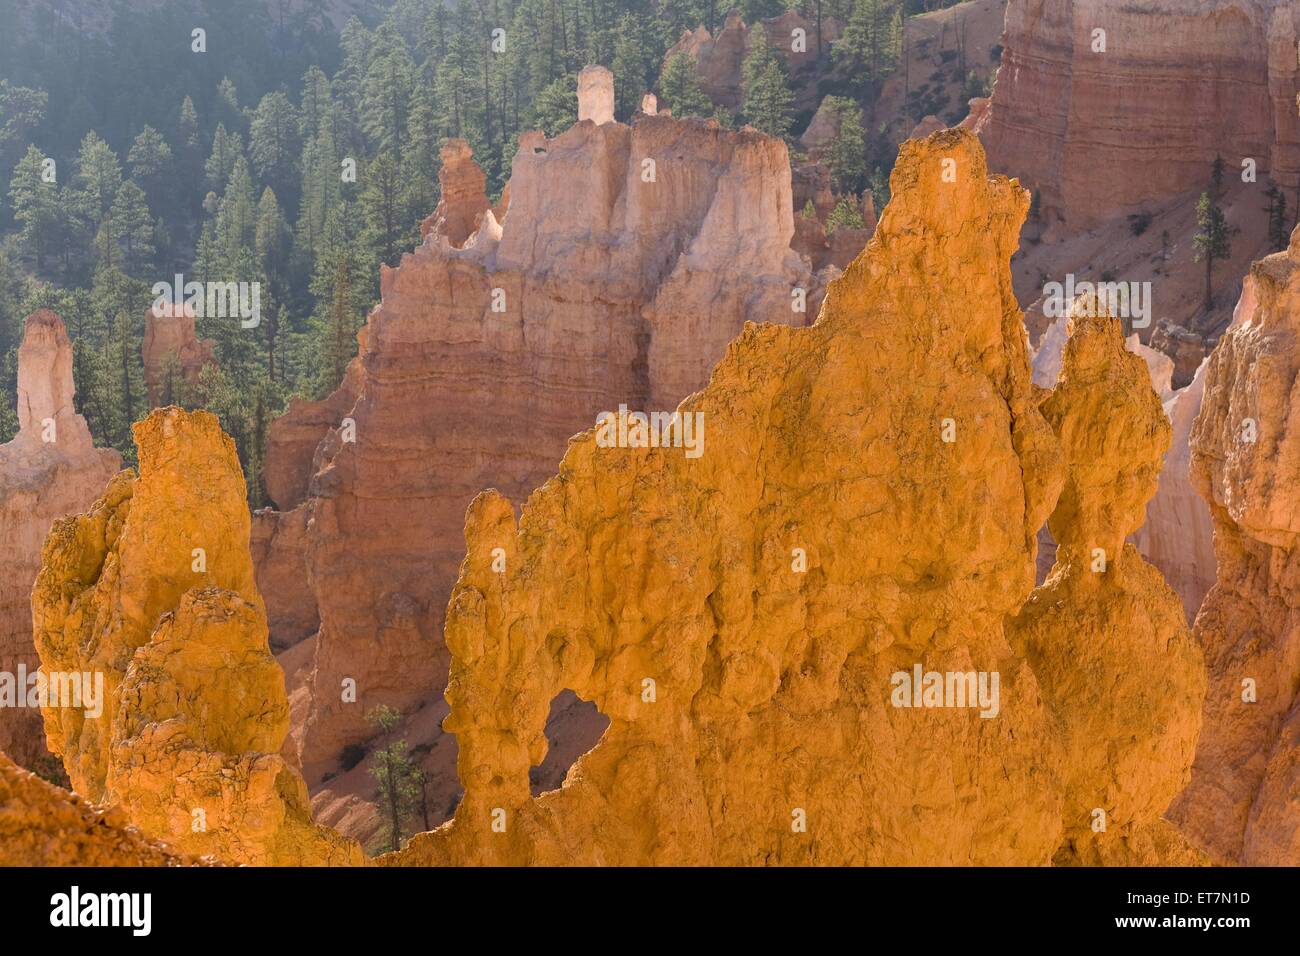 Verschiedenfarbige bizzarro Erosionsformen mit Felsenfenster anfiteatro im Morgenlicht im, USA Utah, Bryce Canyon Nationalpark Foto Stock